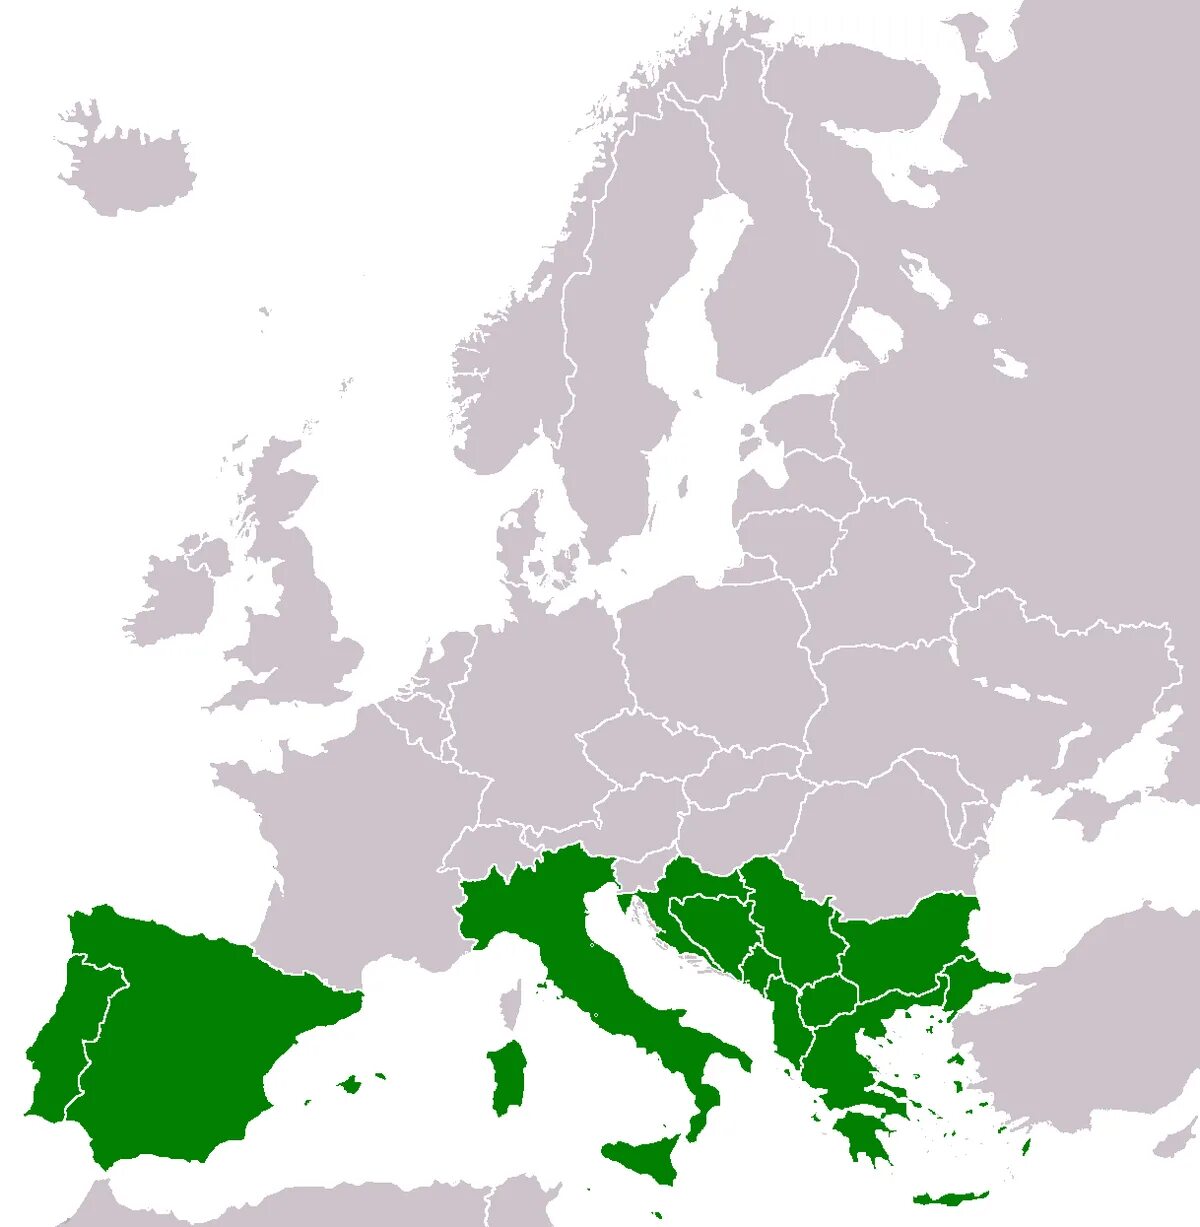 Южная Европа на карте. Северная и Южная Европа. Страны Южной Европы на карте. Границы Южной Европы.